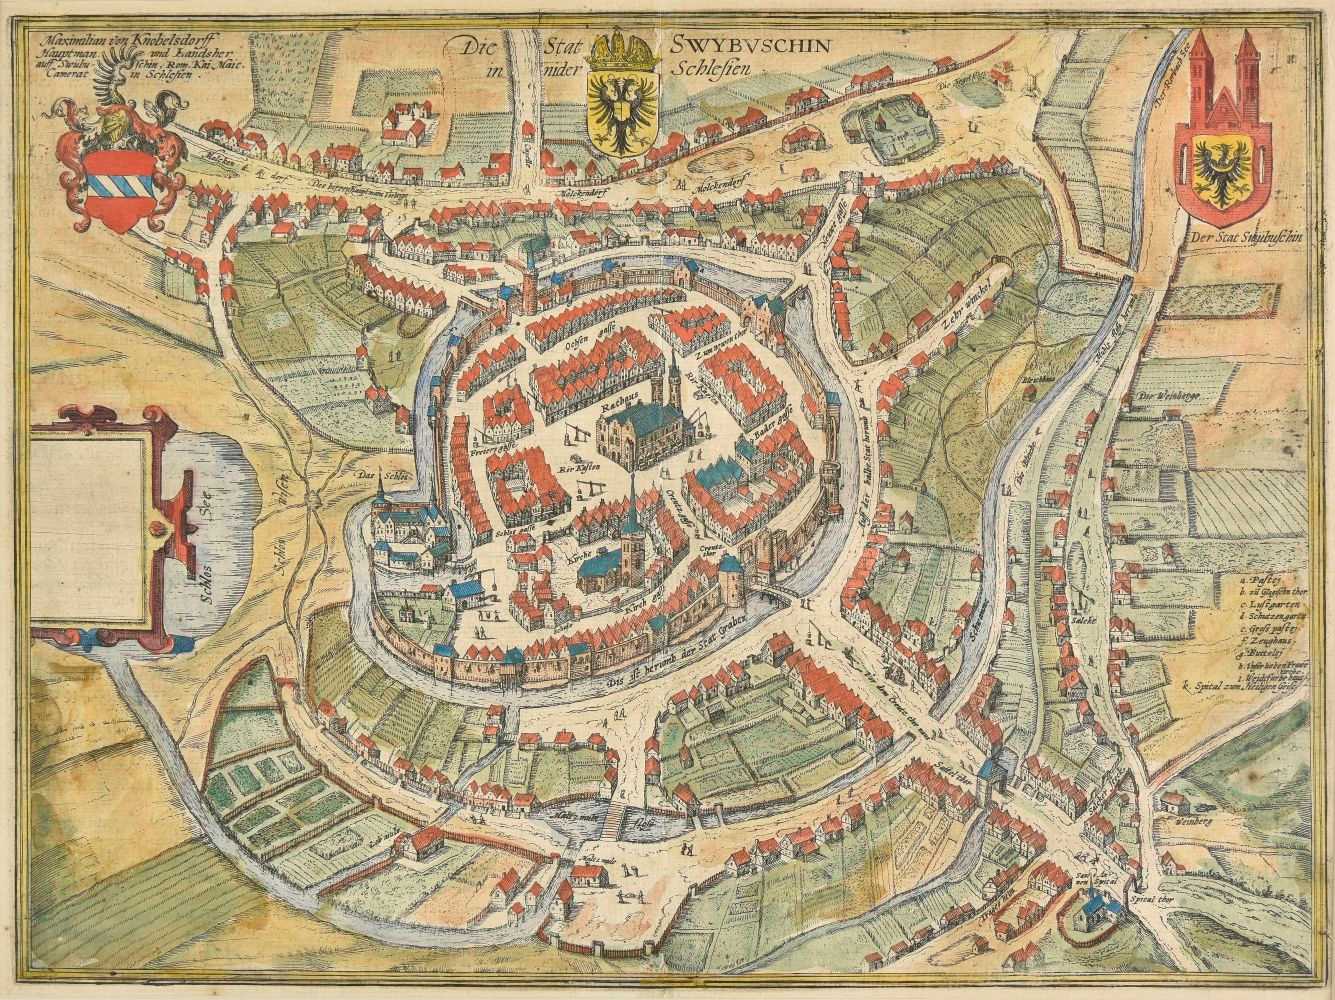 Lot 64 - Poland. (Braun Georg & Hogenberg Franz), Die Stat Swybuschin, circa 1580